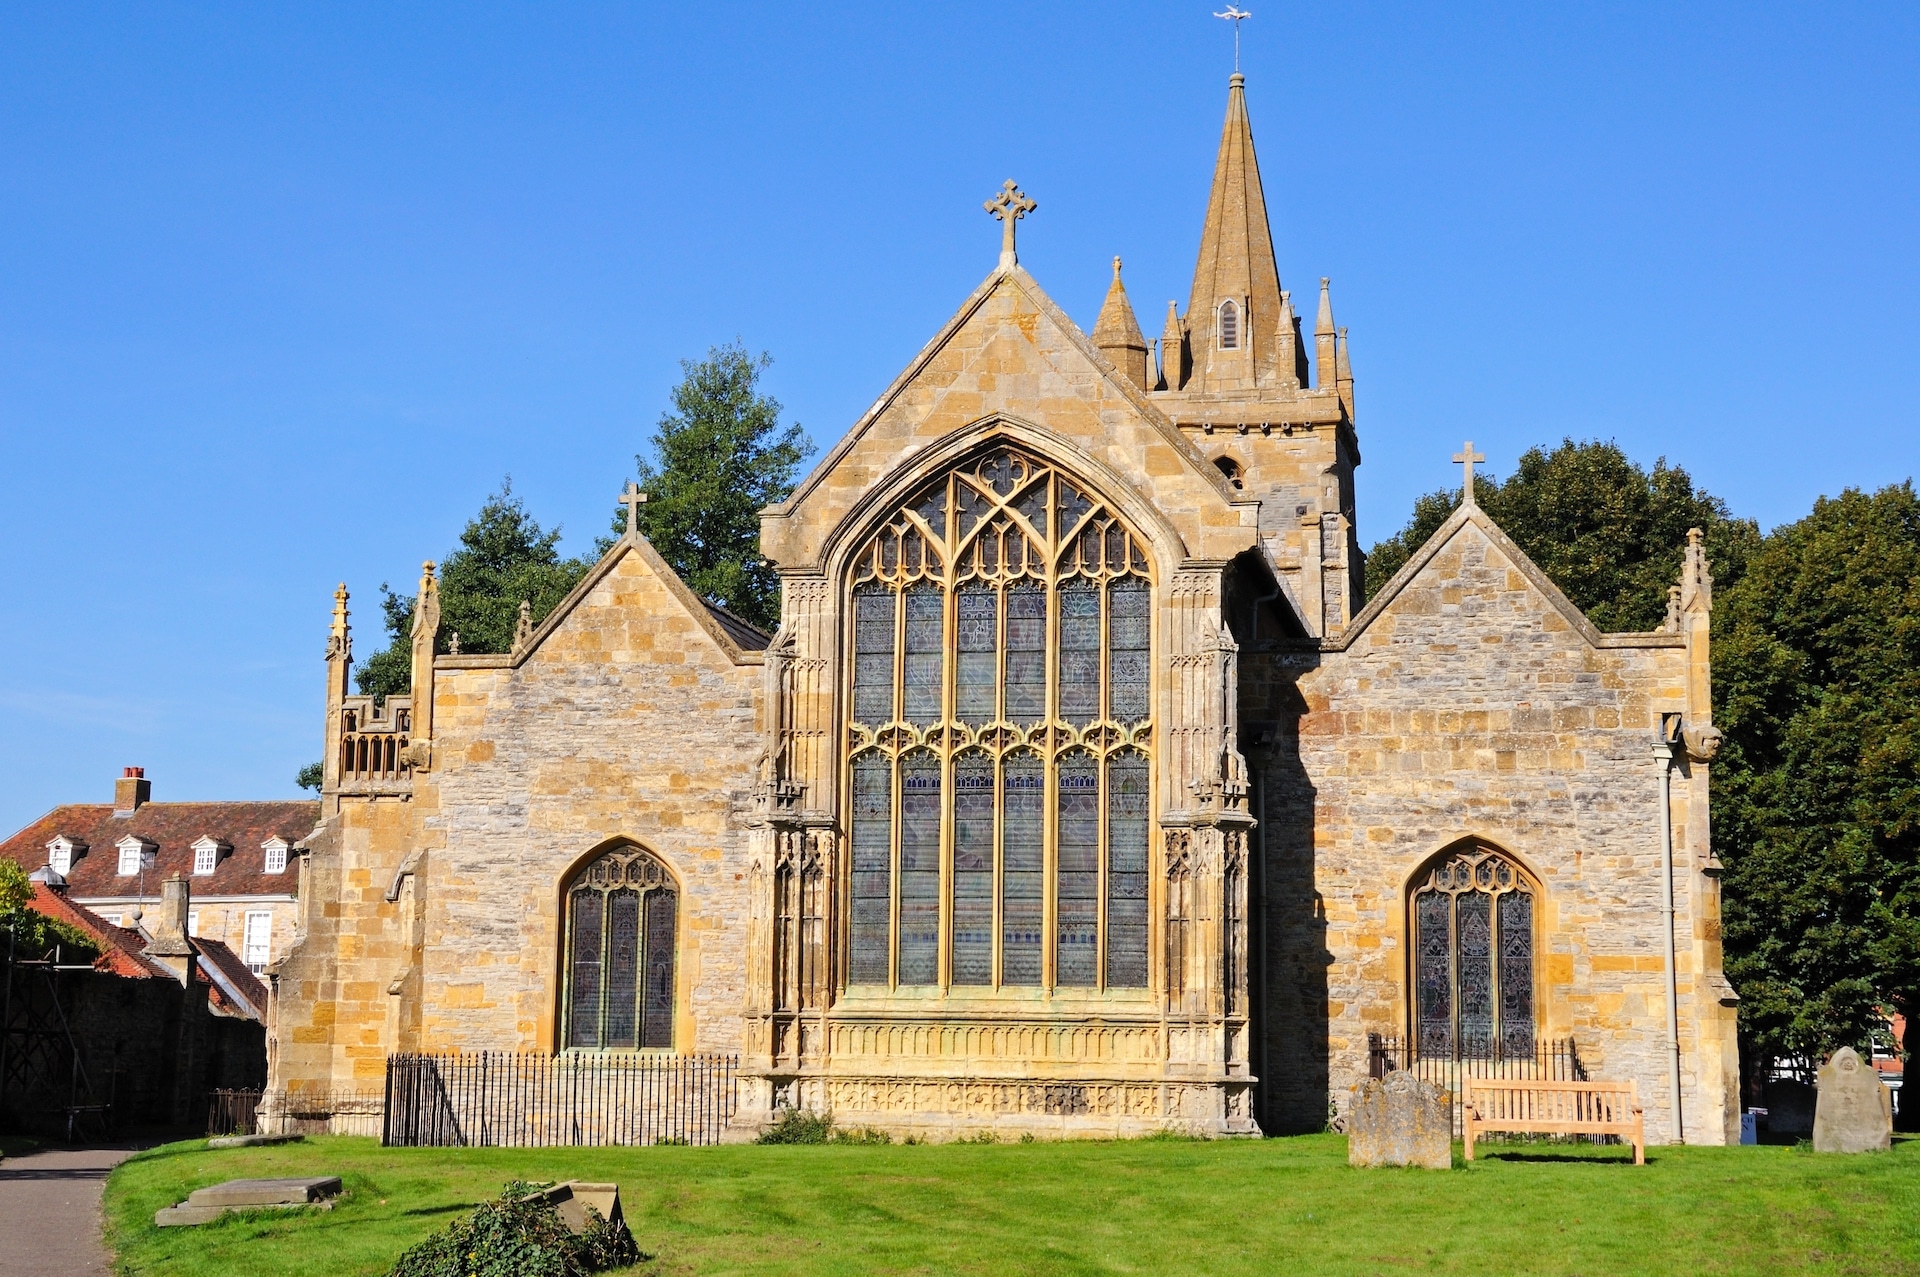 St Lawrence Church and churchyard, Evesham, Worcestershire, England, UK, Western Europe.